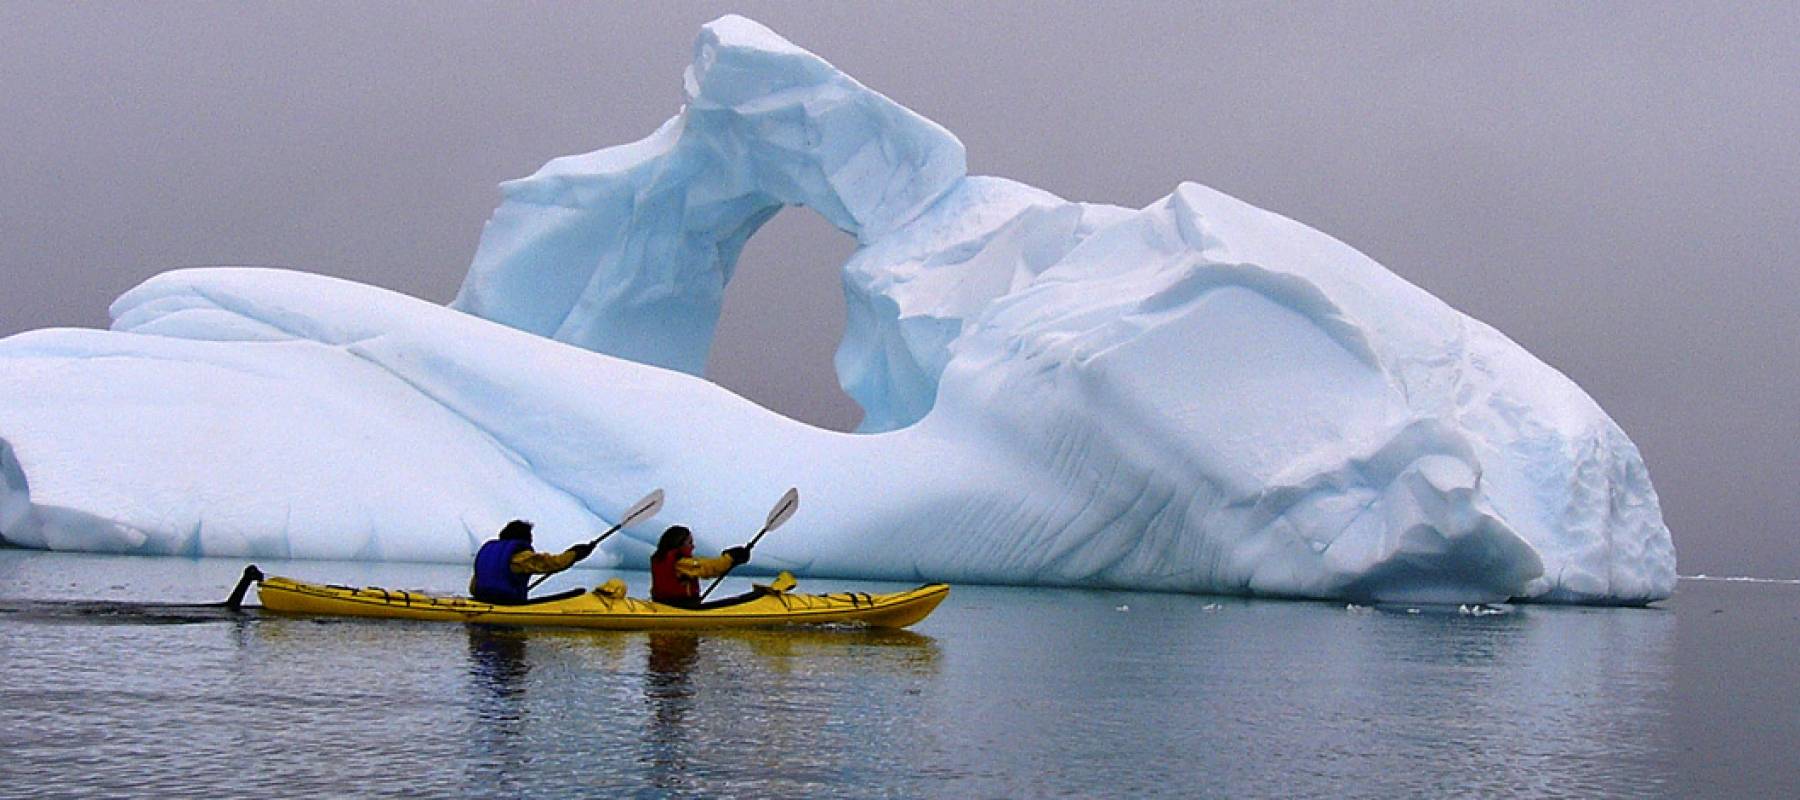 Достопримечательности антарктиды фото и описание